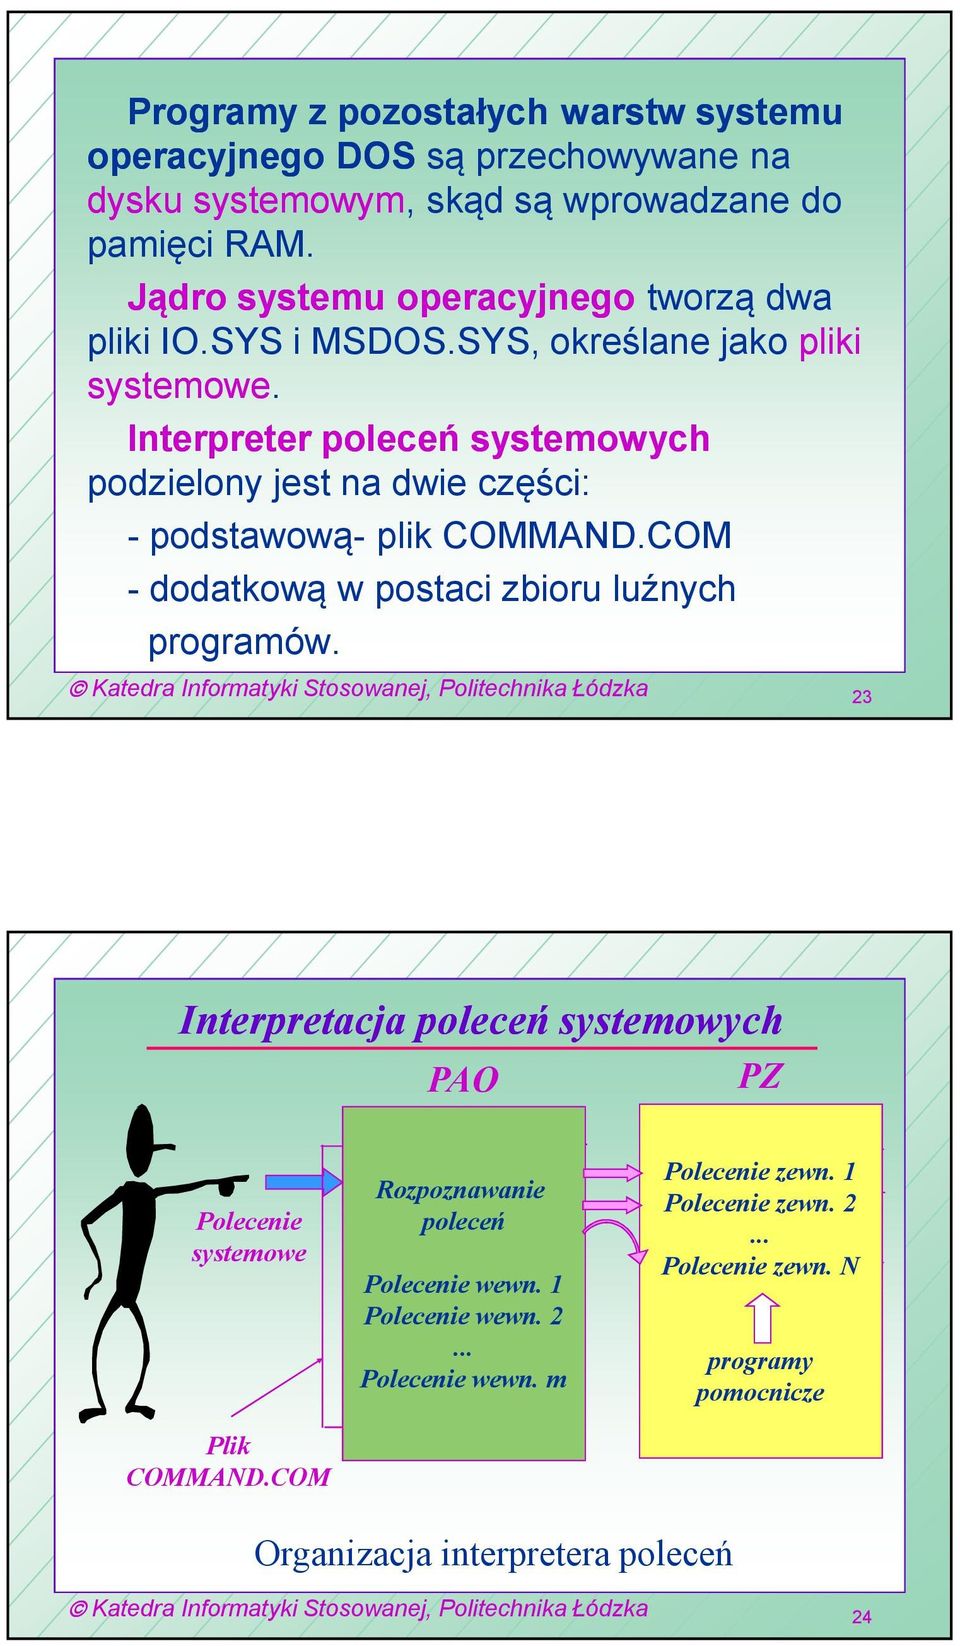 Interpreter poleceń systemowych podzielony jest na dwie części: - podstawową- plik COMMAND.COM - dodatkową w postaci zbioru luźnych programów.